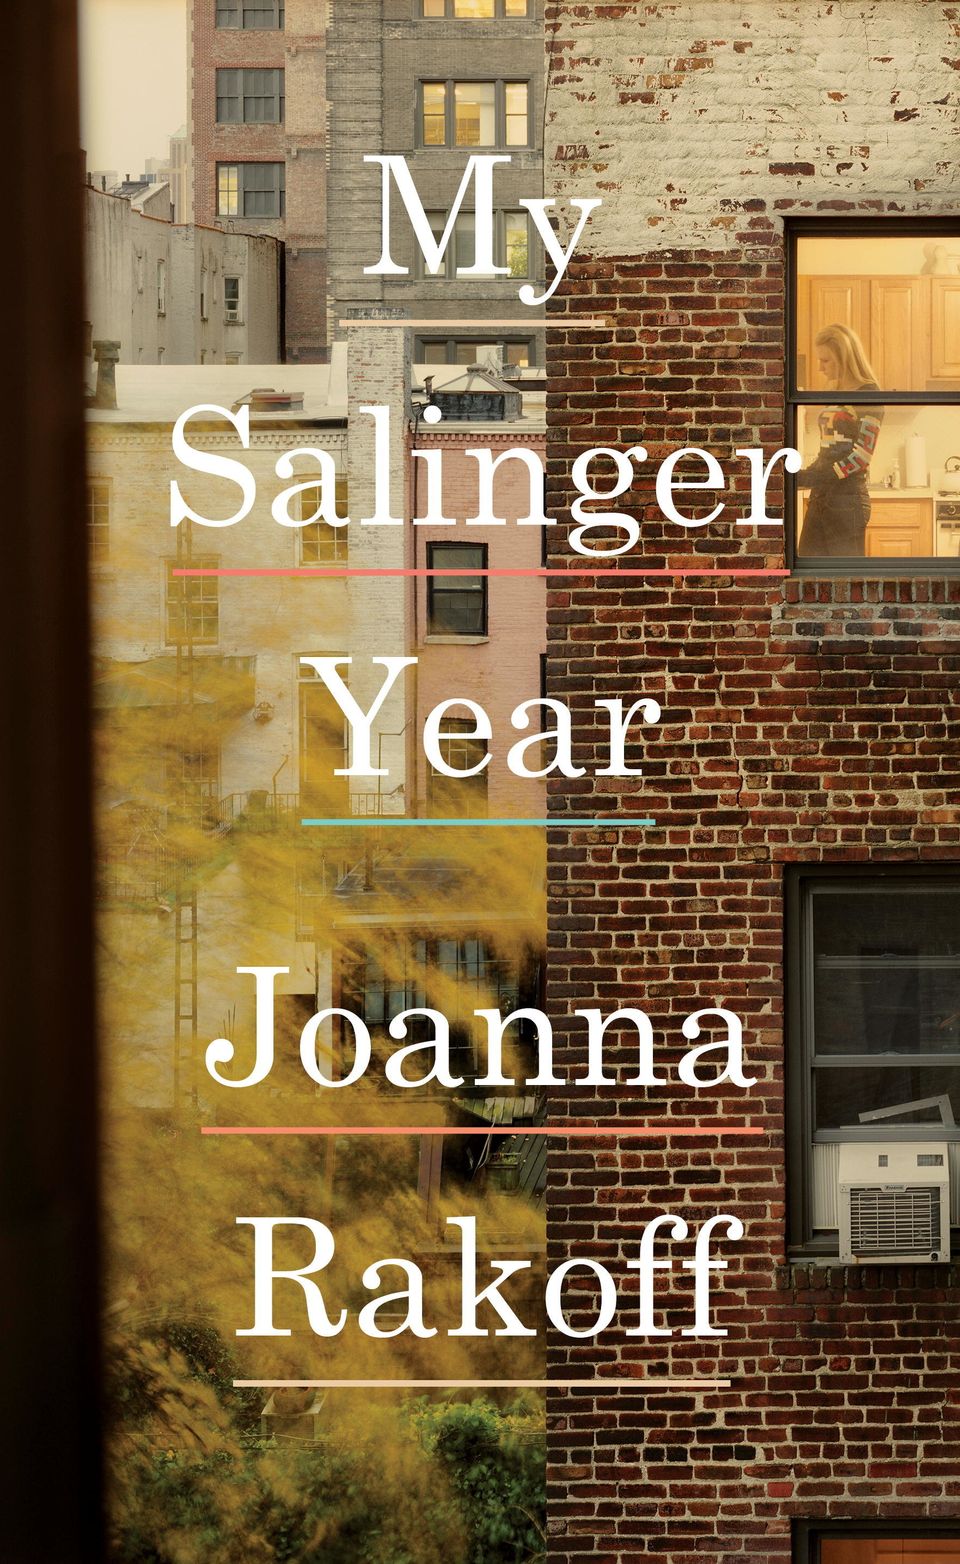 'My Salinger Year' by Joanna Rakoff